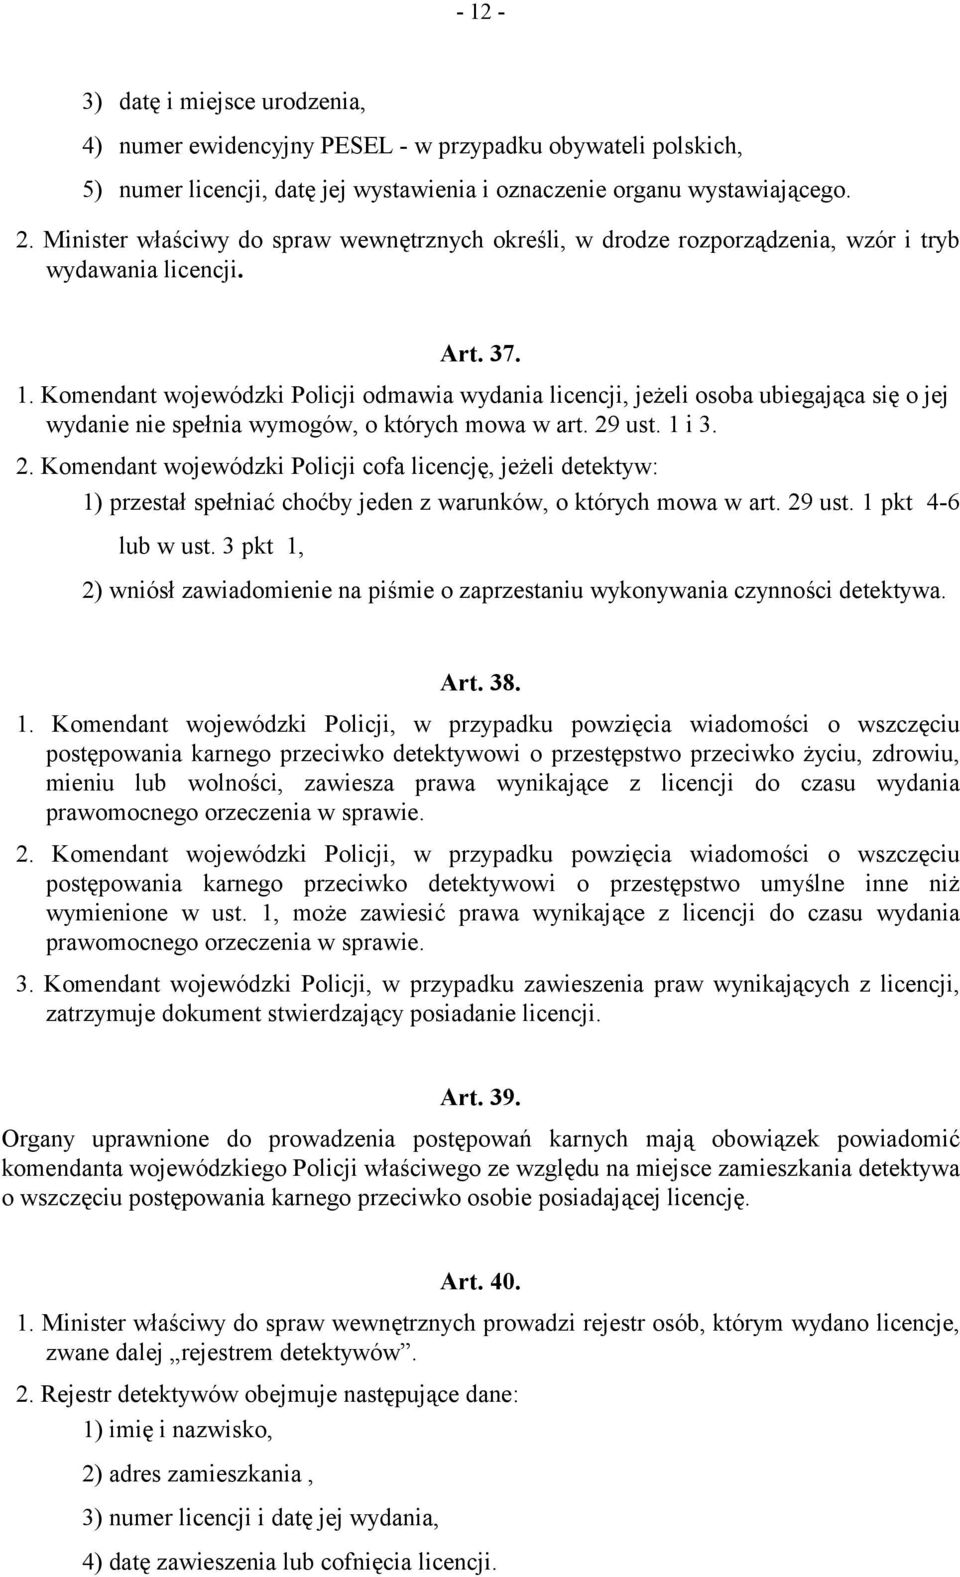 Komendant wojewódzki Policji odmawia wydania licencji, jeżeli osoba ubiegająca się o jej wydanie nie spełnia wymogów, o których mowa w art. 29